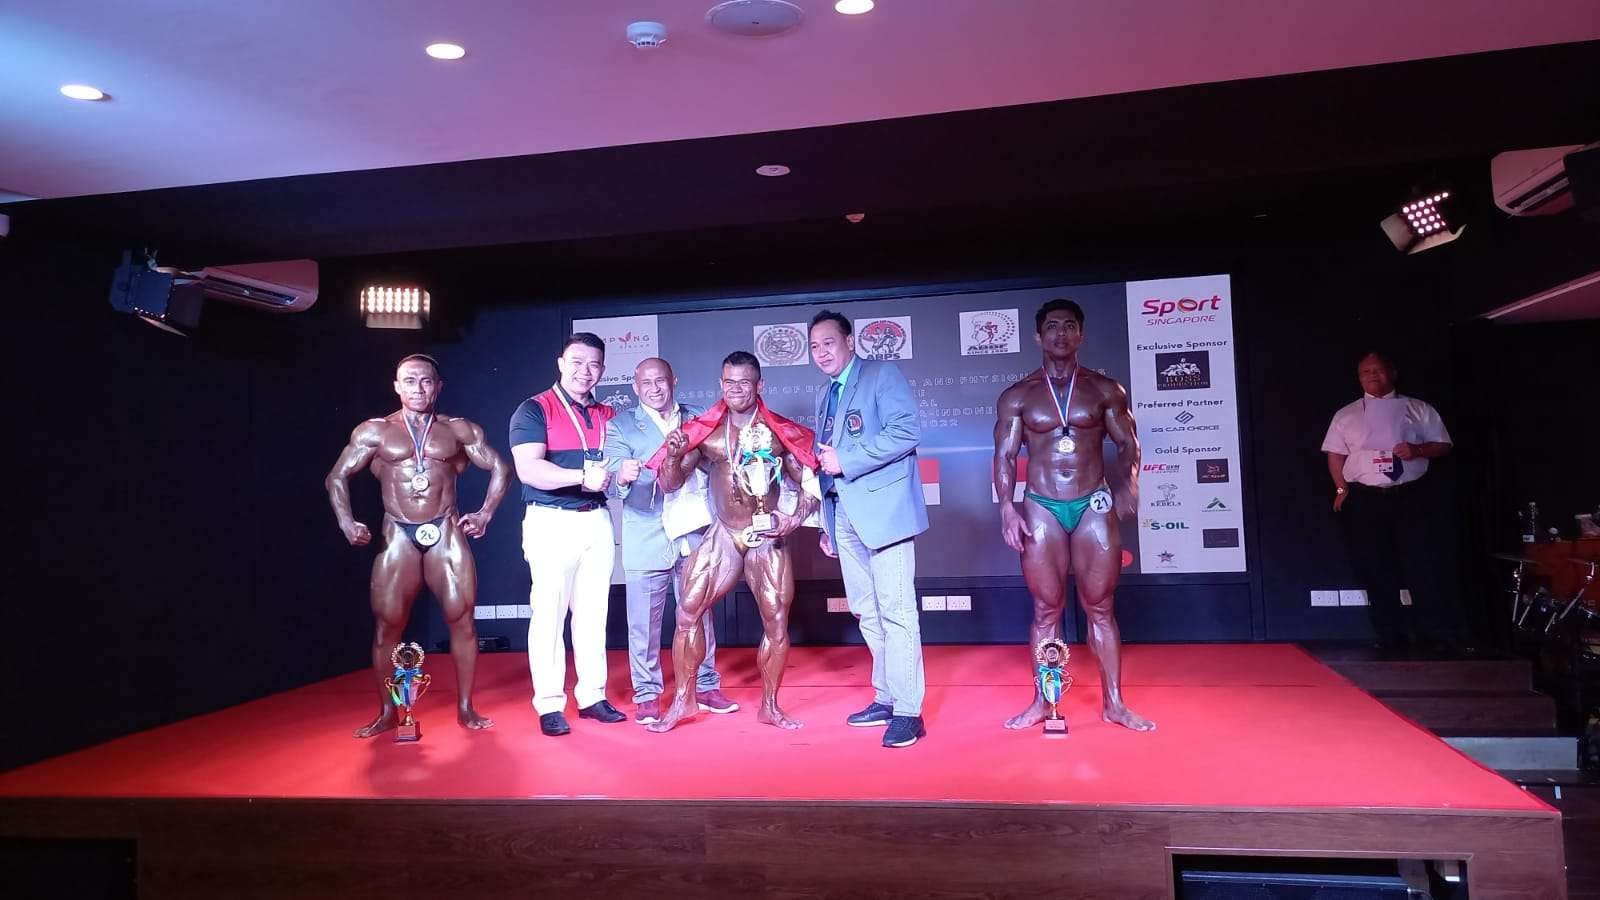 Binaragawan Jatim, Akbar Asmi saat meraih juara di ajang internasional di Singapura. (Foto: PBFI Jatim)